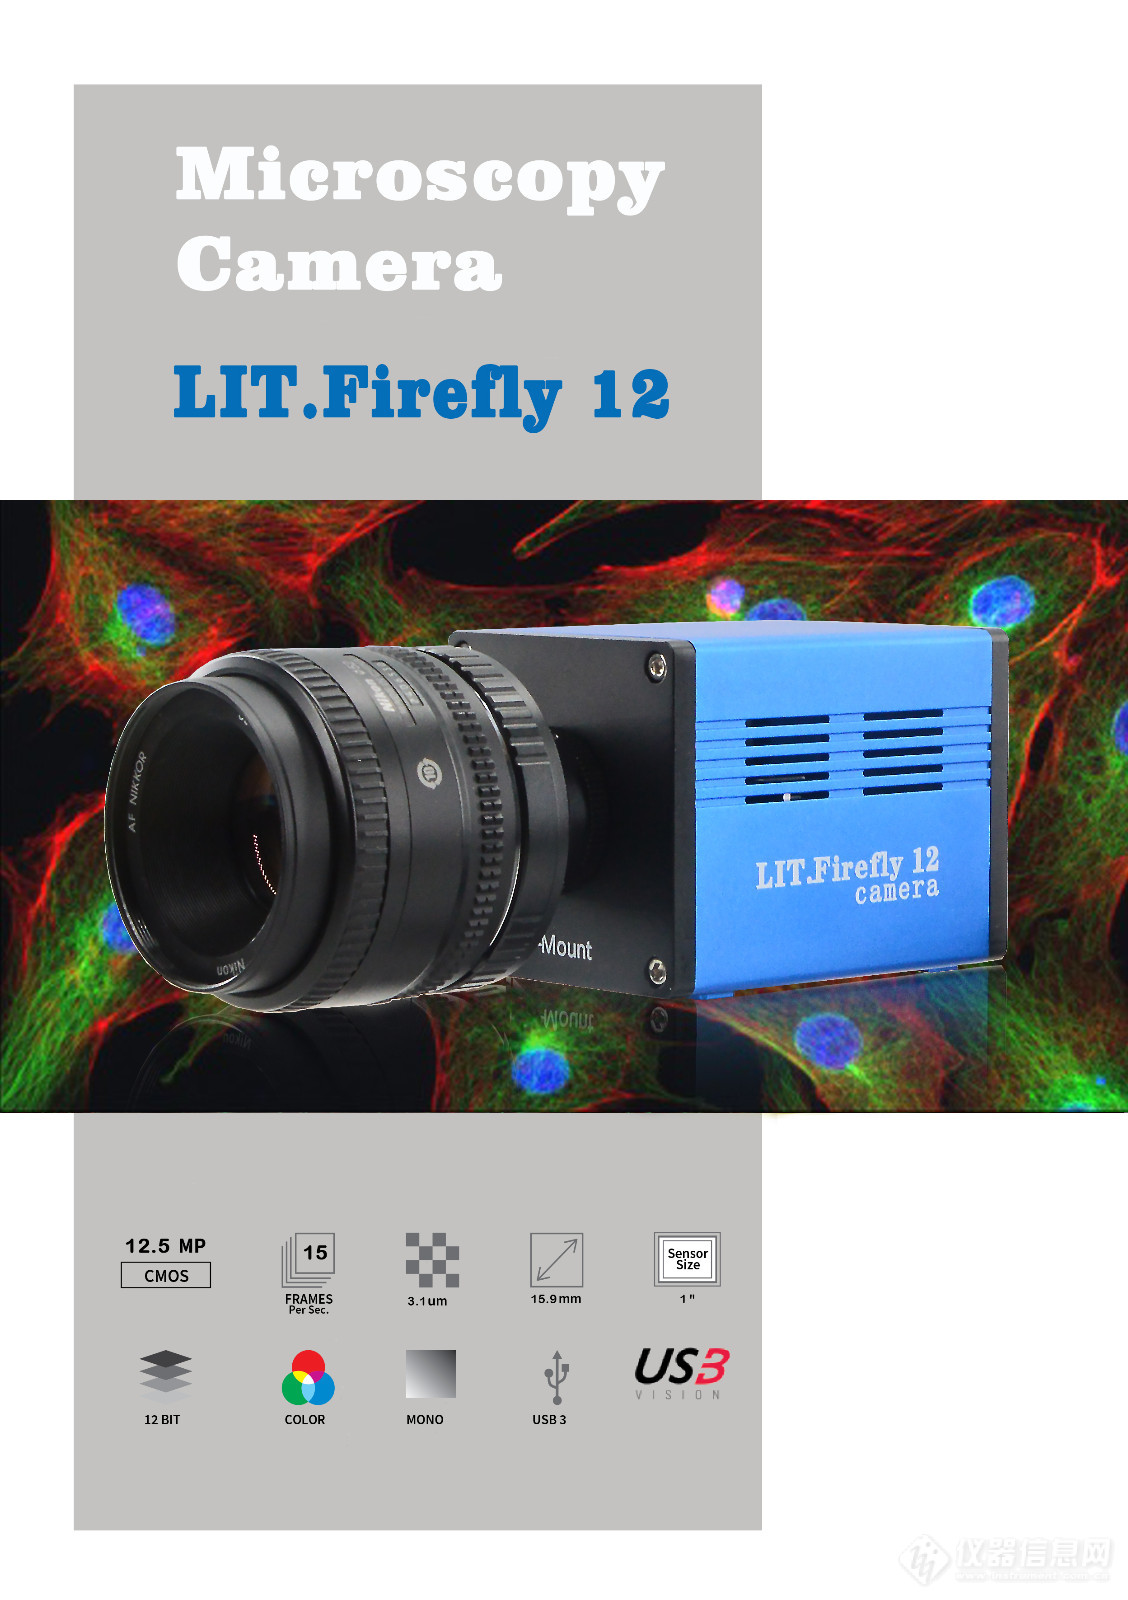 Laite莱特 显微镜相机LIT.Firefly 12 Flyer_V21.04_页面_1 A.jpg